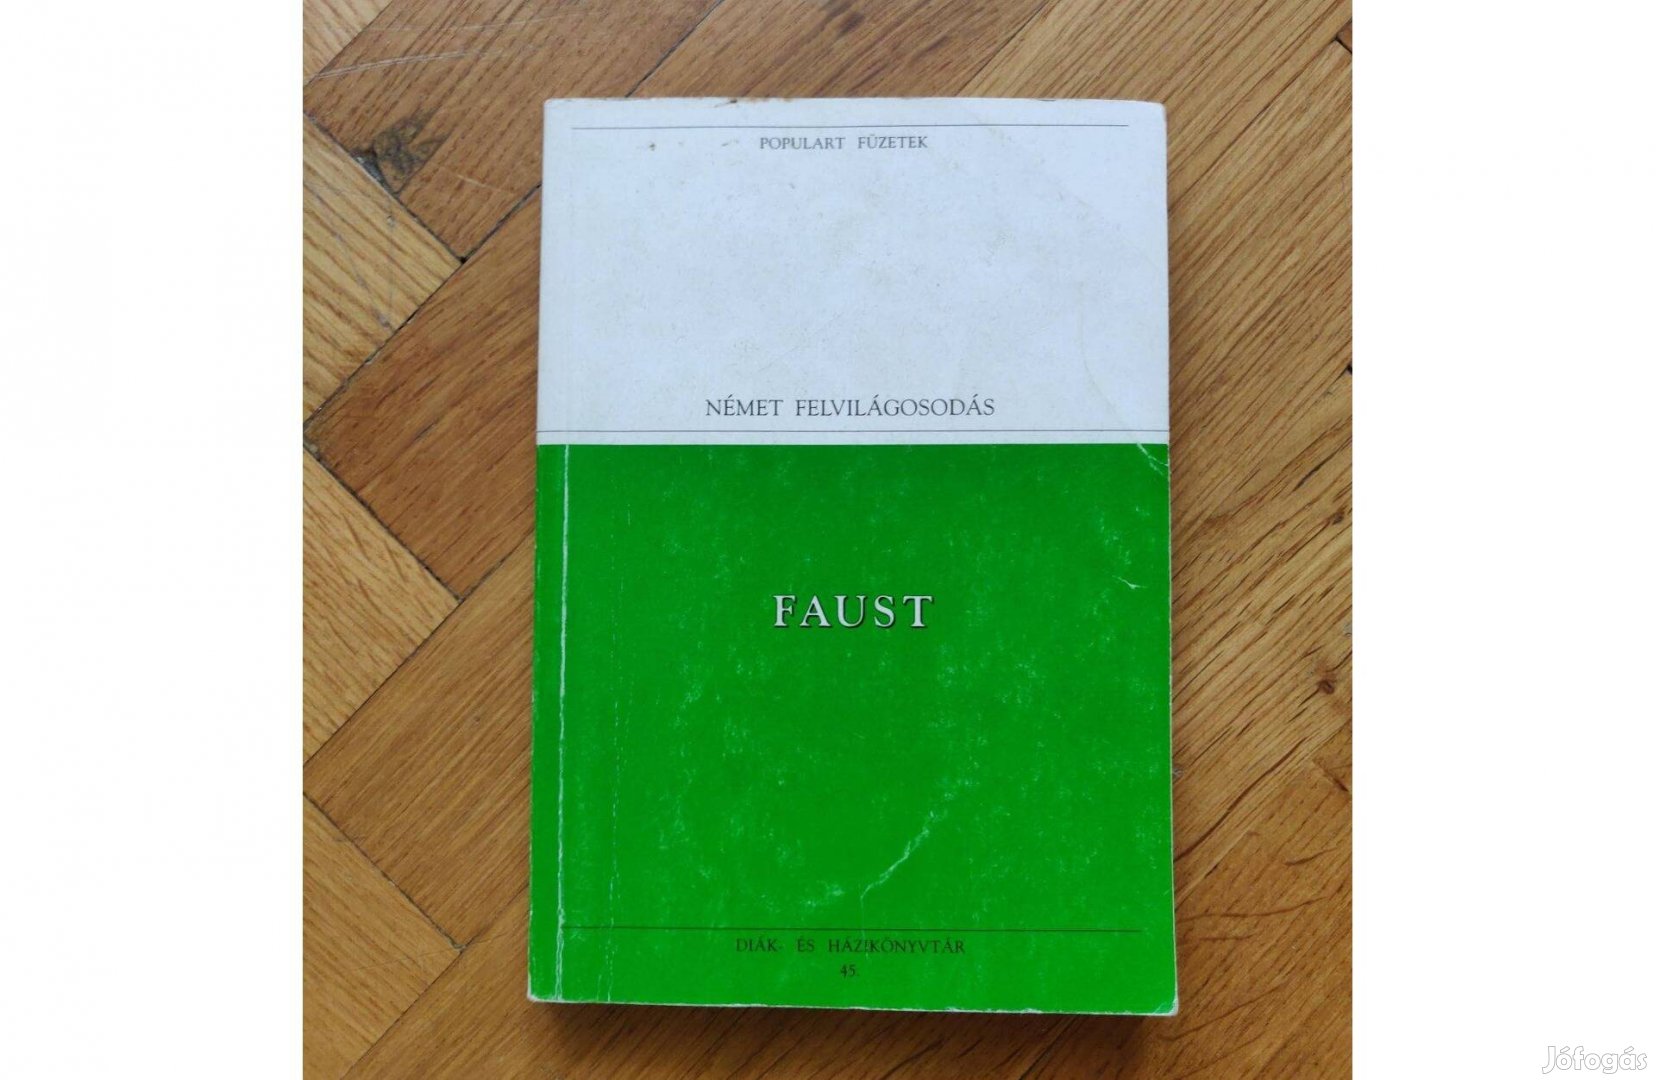 Goethe Faust használt könyv eladó irodalom német felvilágosodás